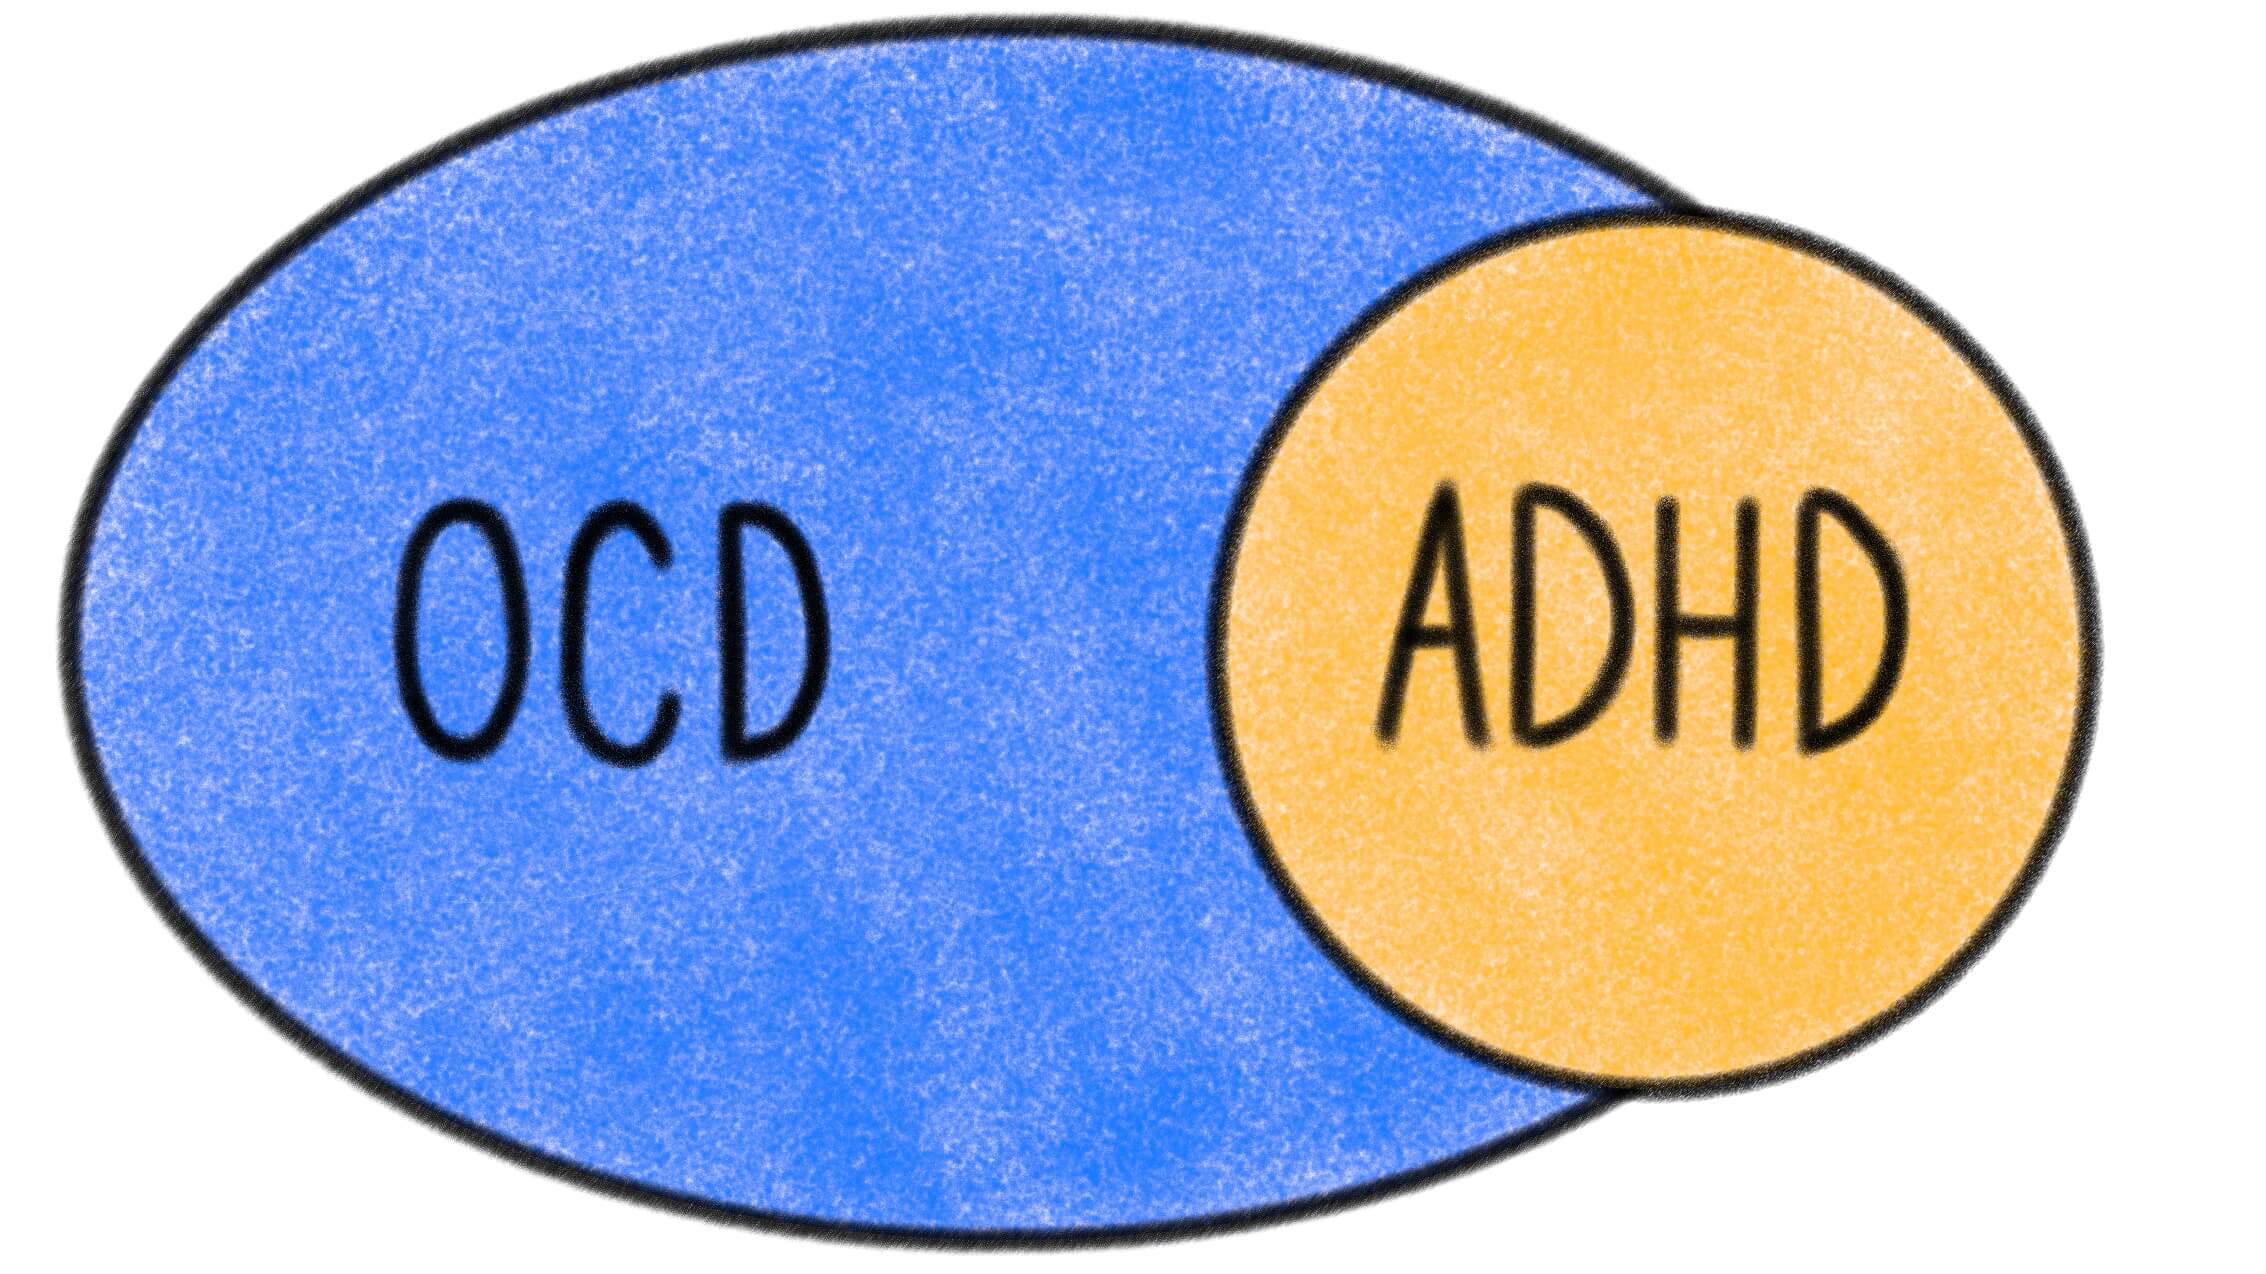 OCD and ADHD